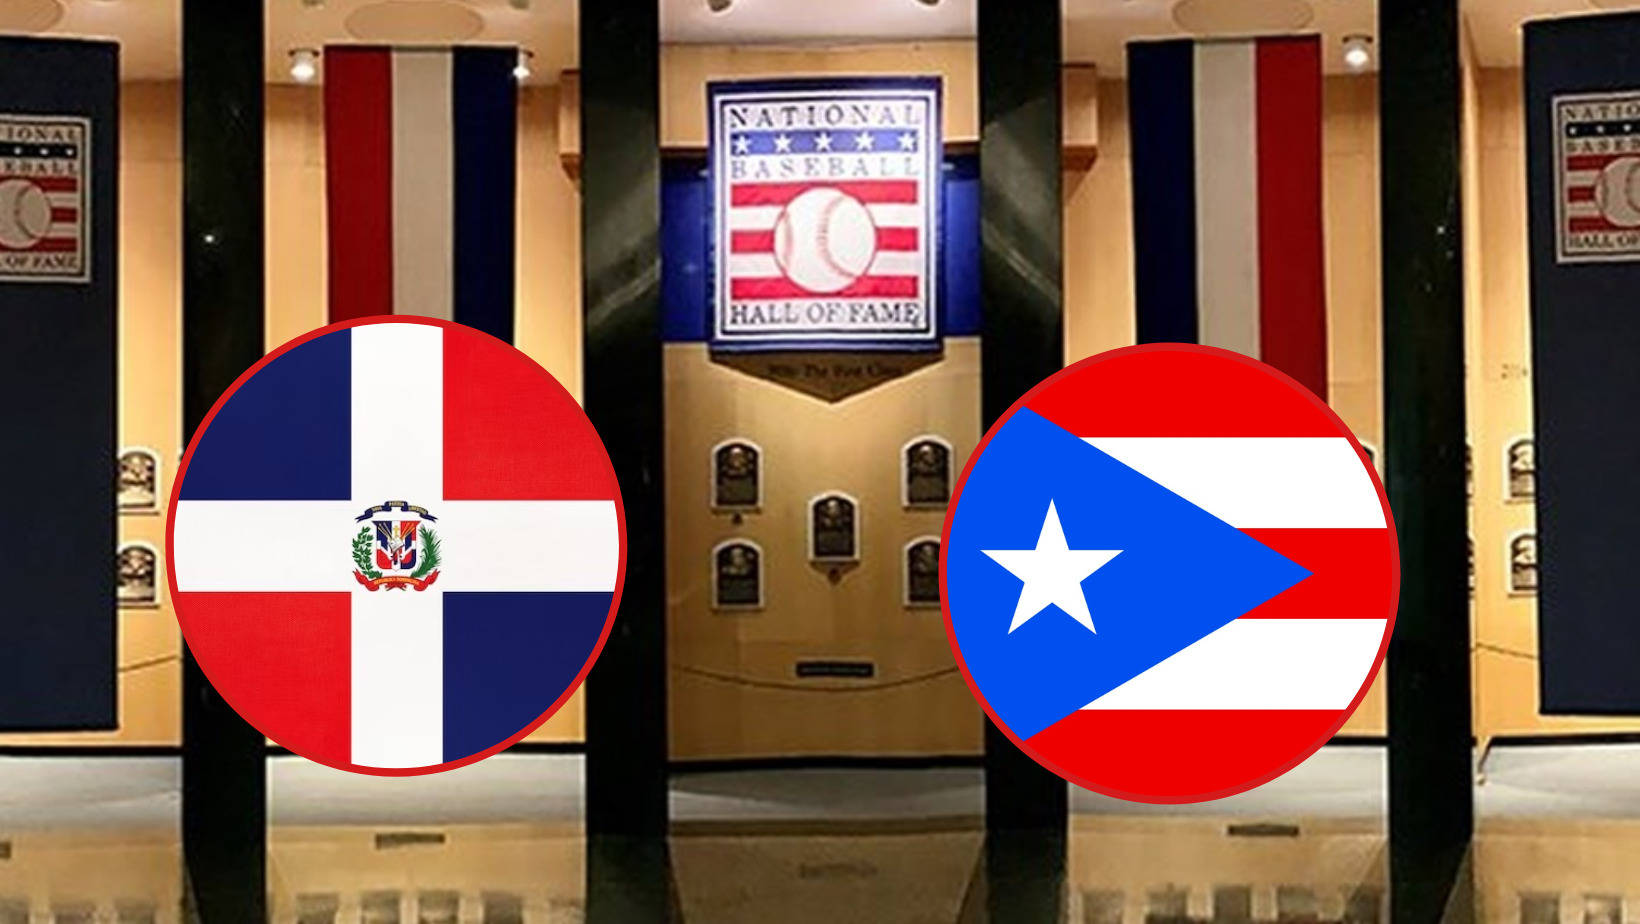 República Dominicana y Puerto Rico, se empata en el Salón de la Fama de Cooperstown. Foto: CDN Digital